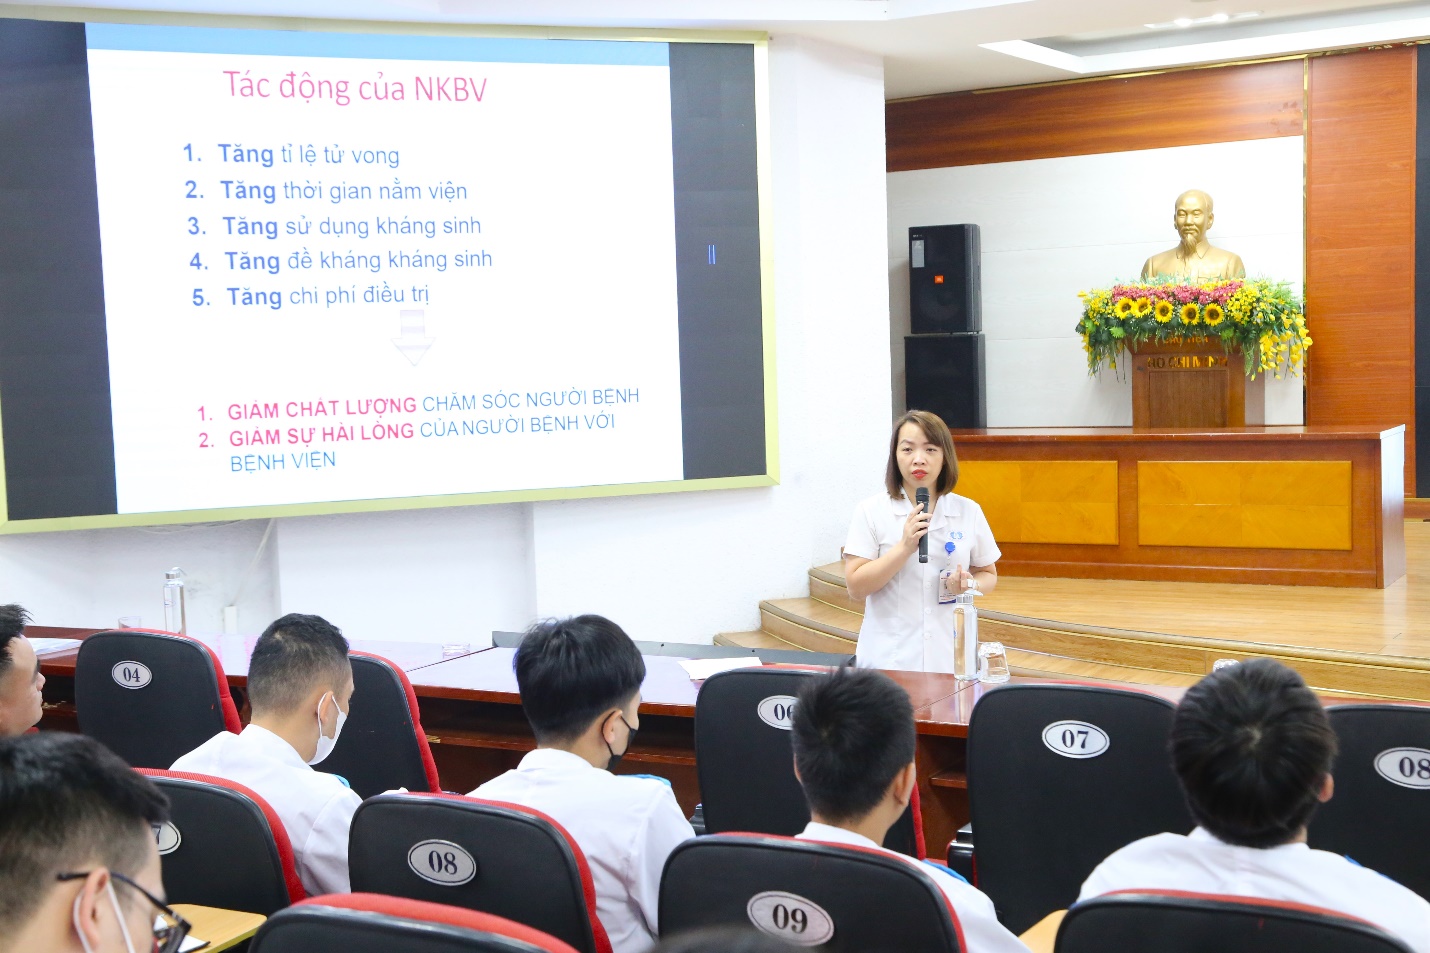 Thạc sĩ Nguyễn Thị Phương Thảo - Phụ trách khoa Kiểm soát nhiễm khuẩn giảng bài tại chương trình 